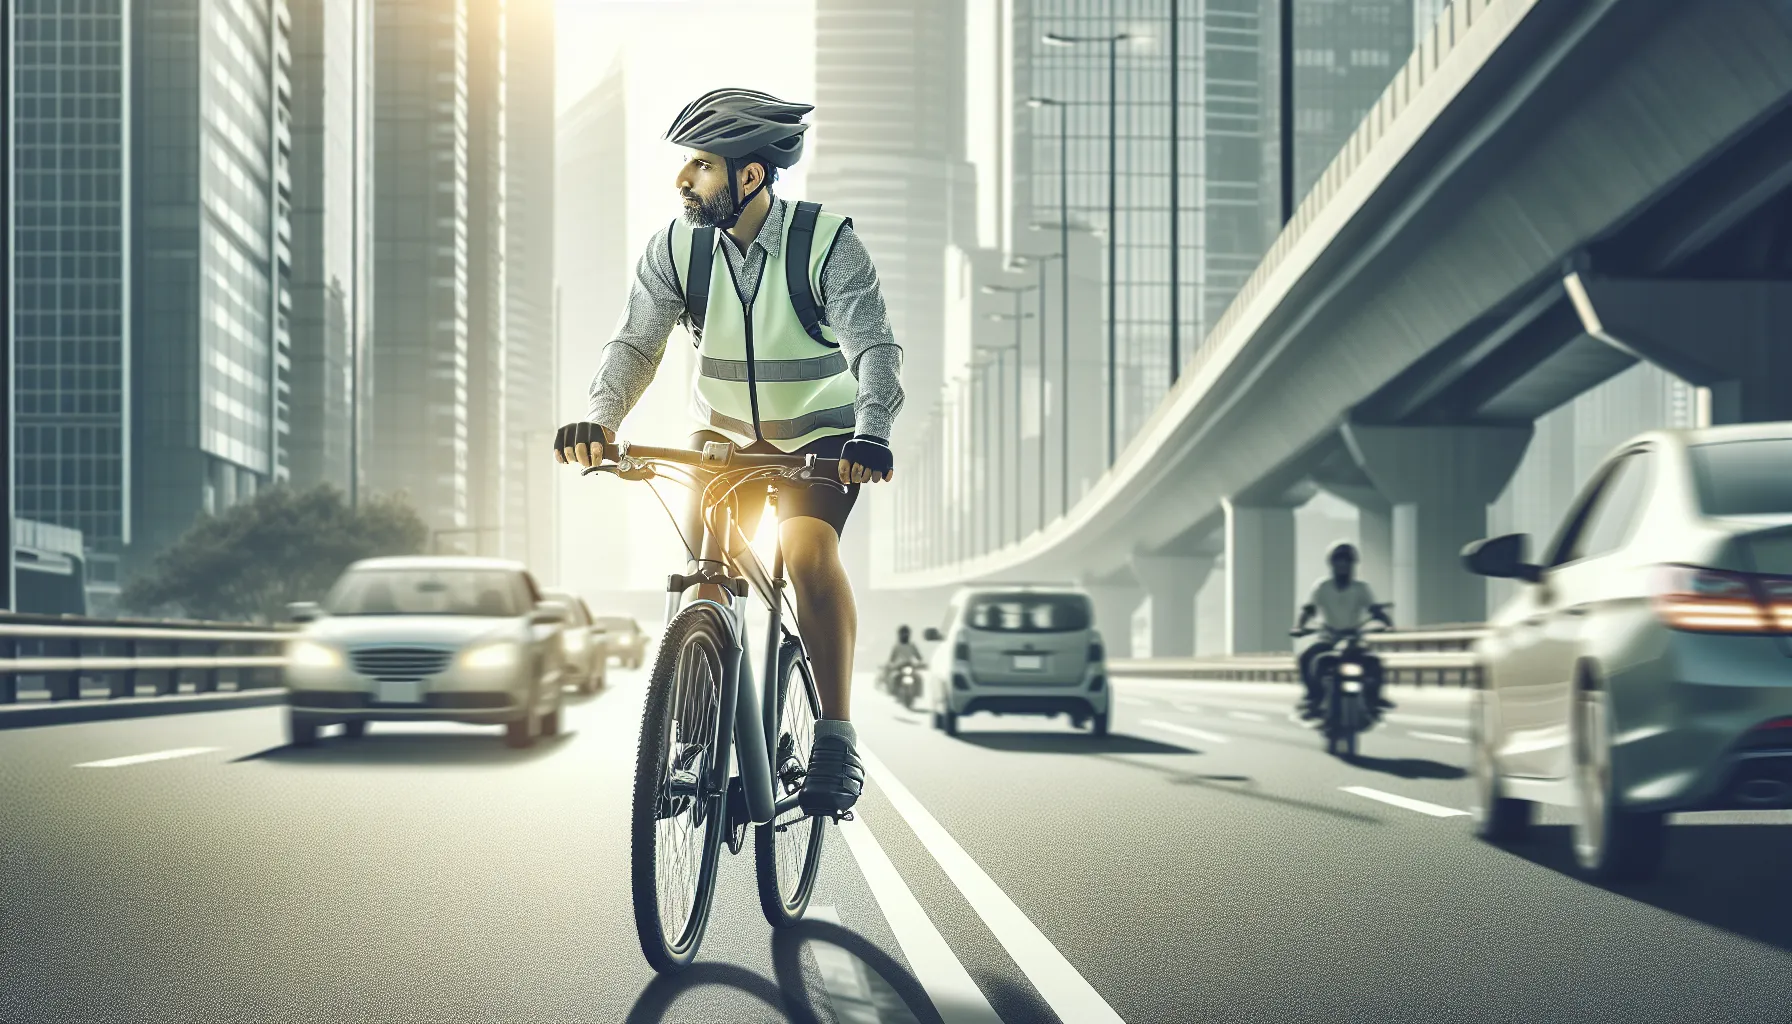 Aqui estão algumas dicas para ciclistas iniciantes sobre como superar o medo do tráfego:

1. Comece devagar: Comece a pedalar em áreas com menos tráfego, como parques ou ciclovias, para ganhar confiança e se acostumar com a bicicleta.

2. Conheça as regras de trânsito: Familiarize-se com as leis de trânsito e as s